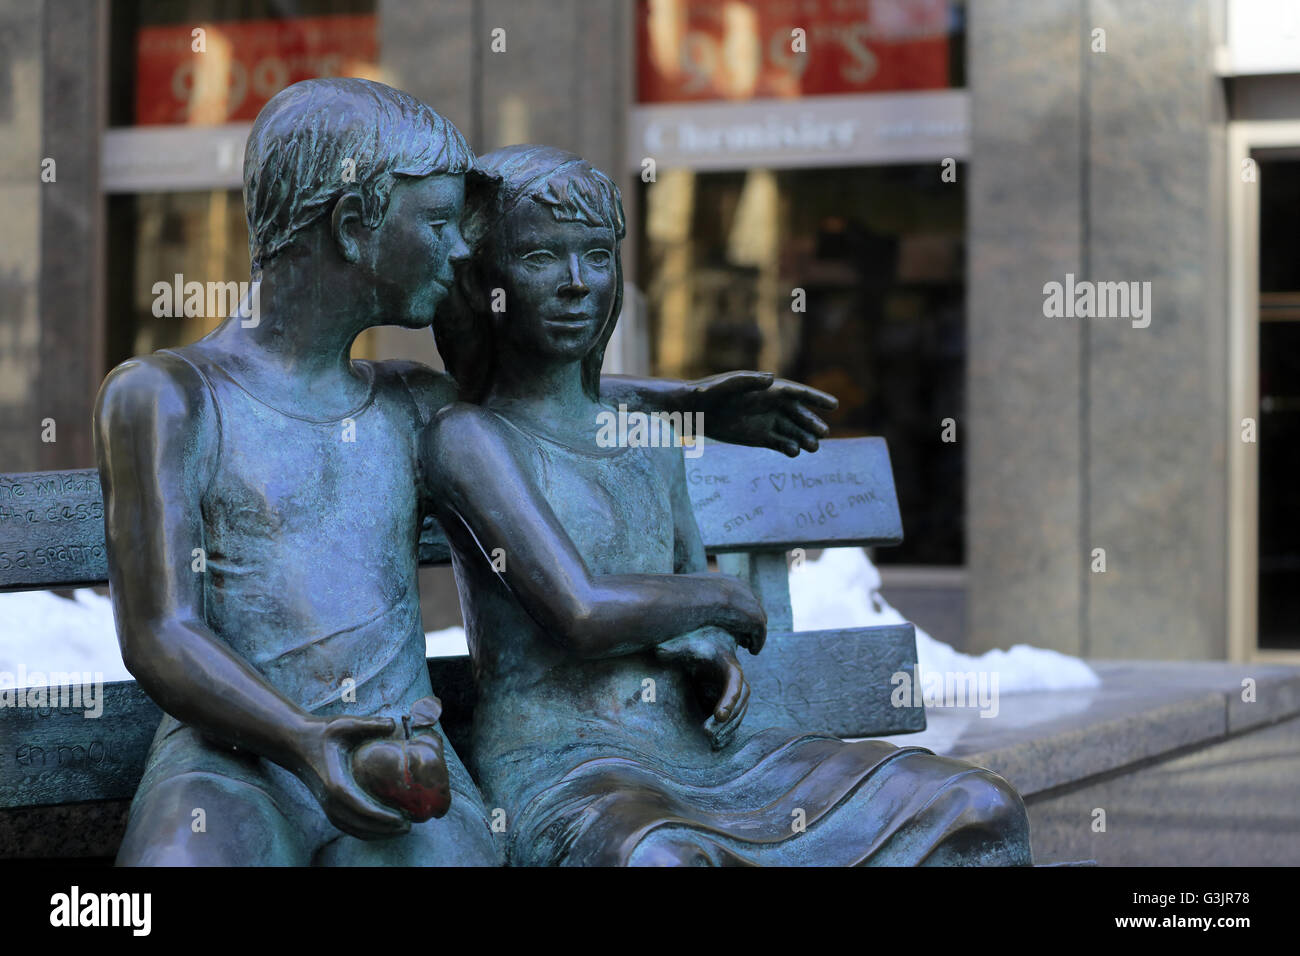 La scultura del segreto del banco della conoscenza dello scultore aie Vivot sul marciapiede di Ave McGill College,Montréal, Québec, Canada Foto Stock